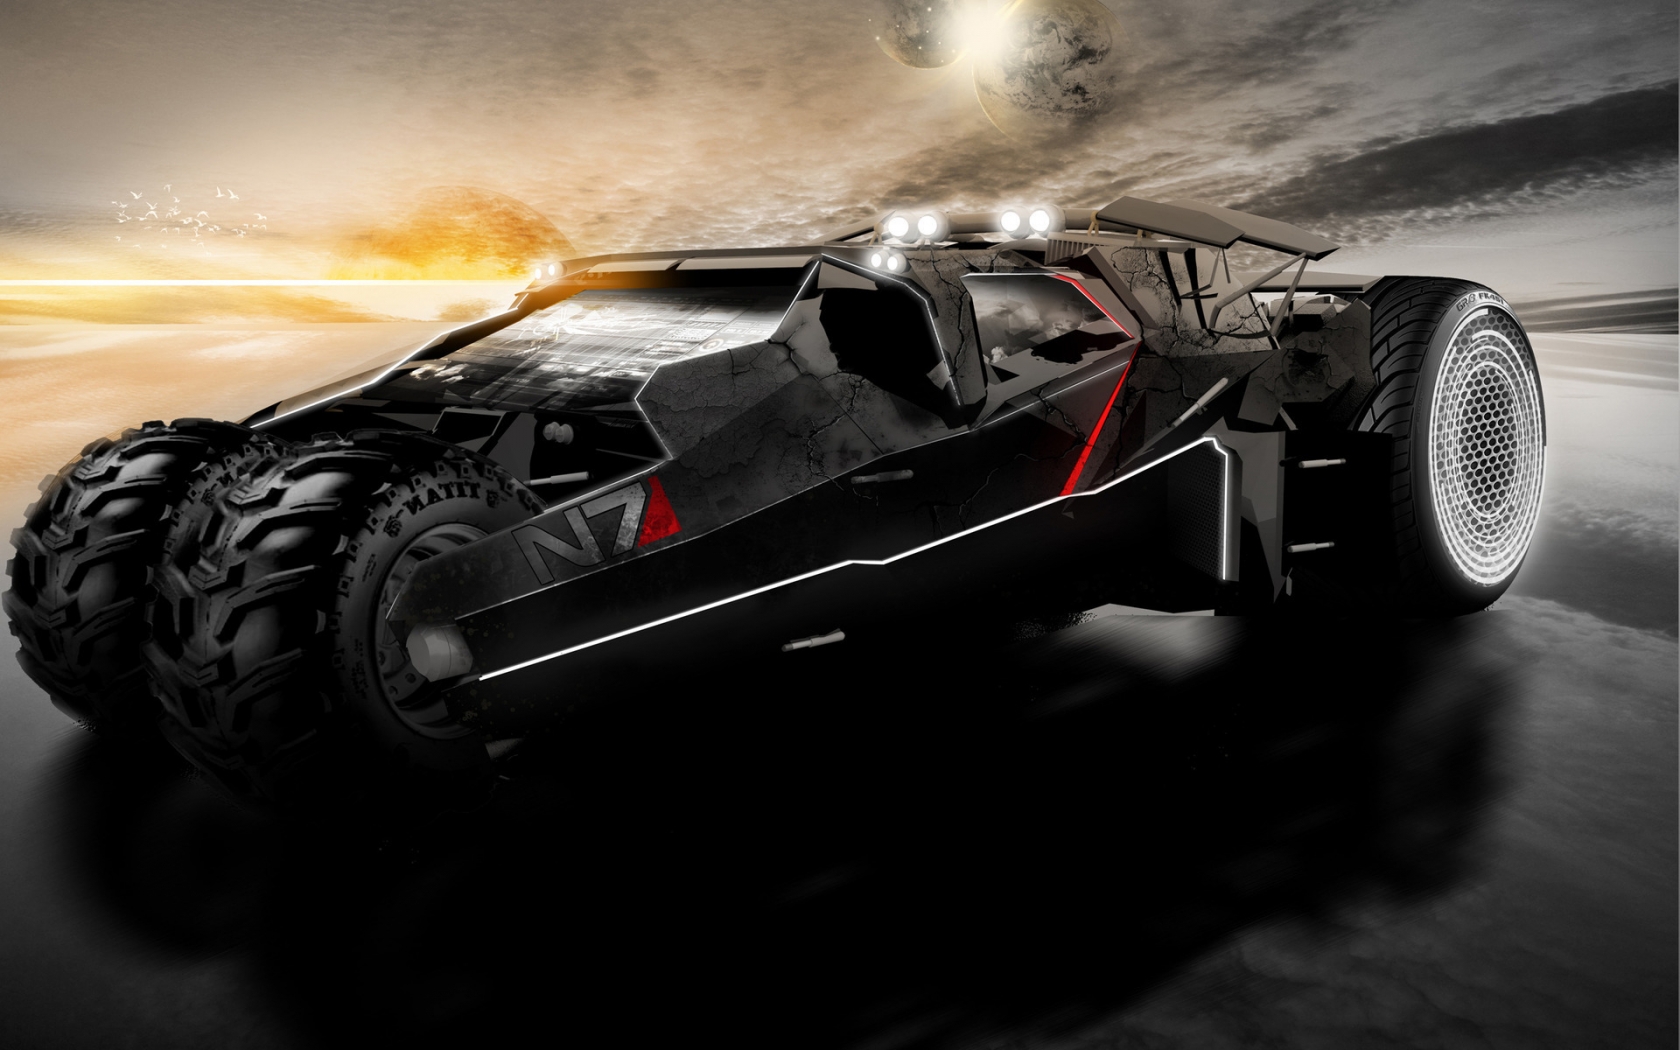 Mass Effect 2 Car for 1680 x 1050 widescreen resolution